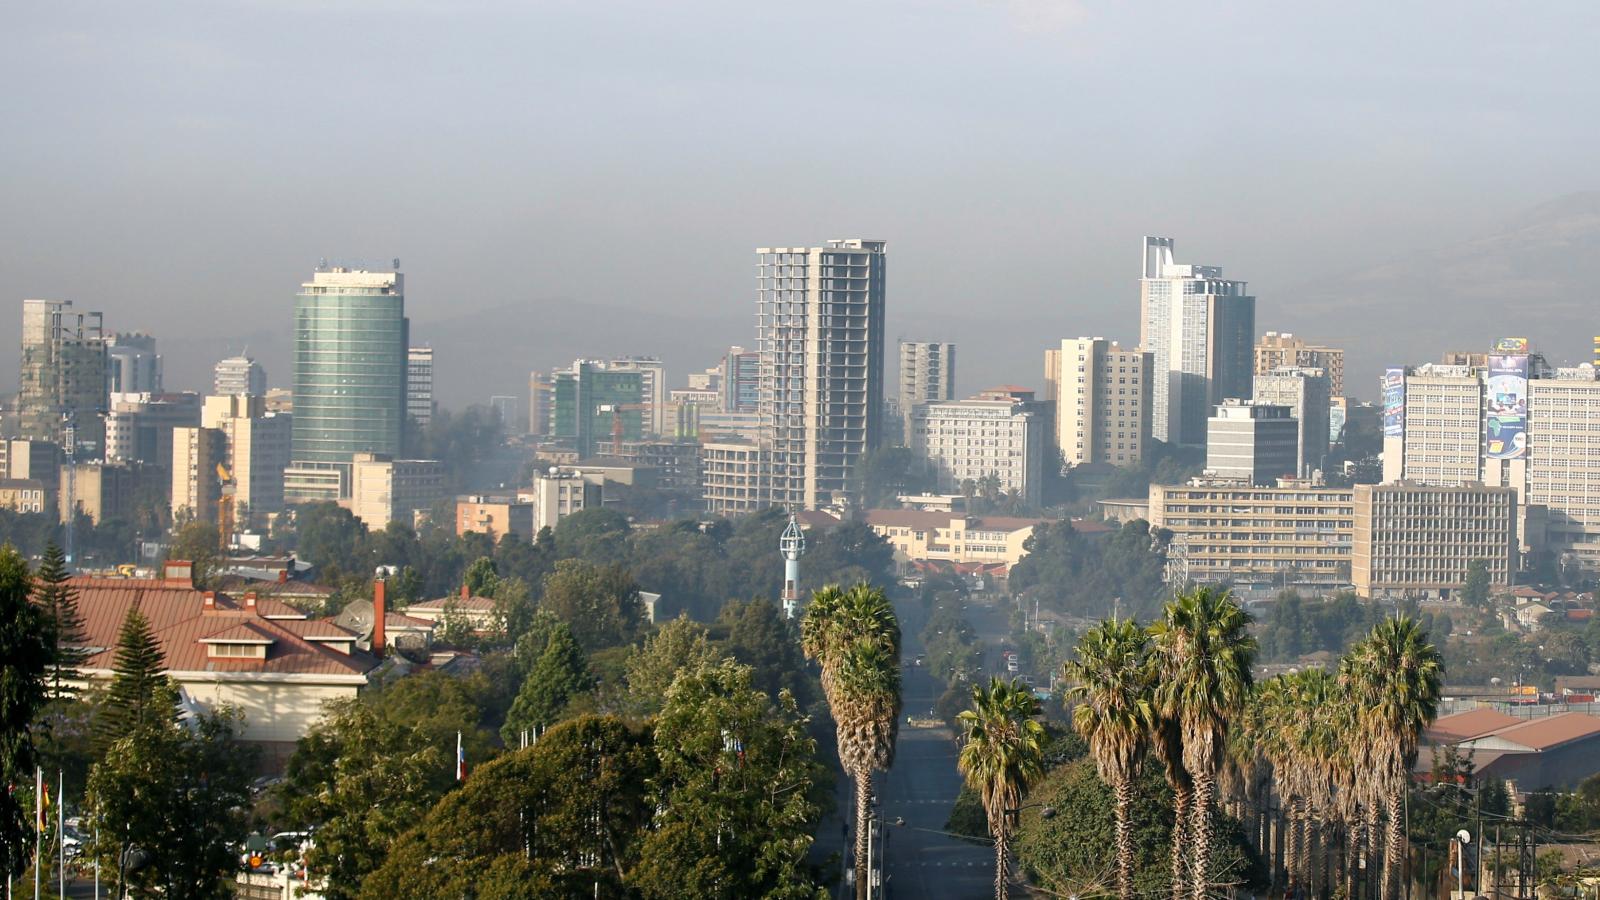 Addis Ababa 40/60, 20/80 Condominium Total Price List 